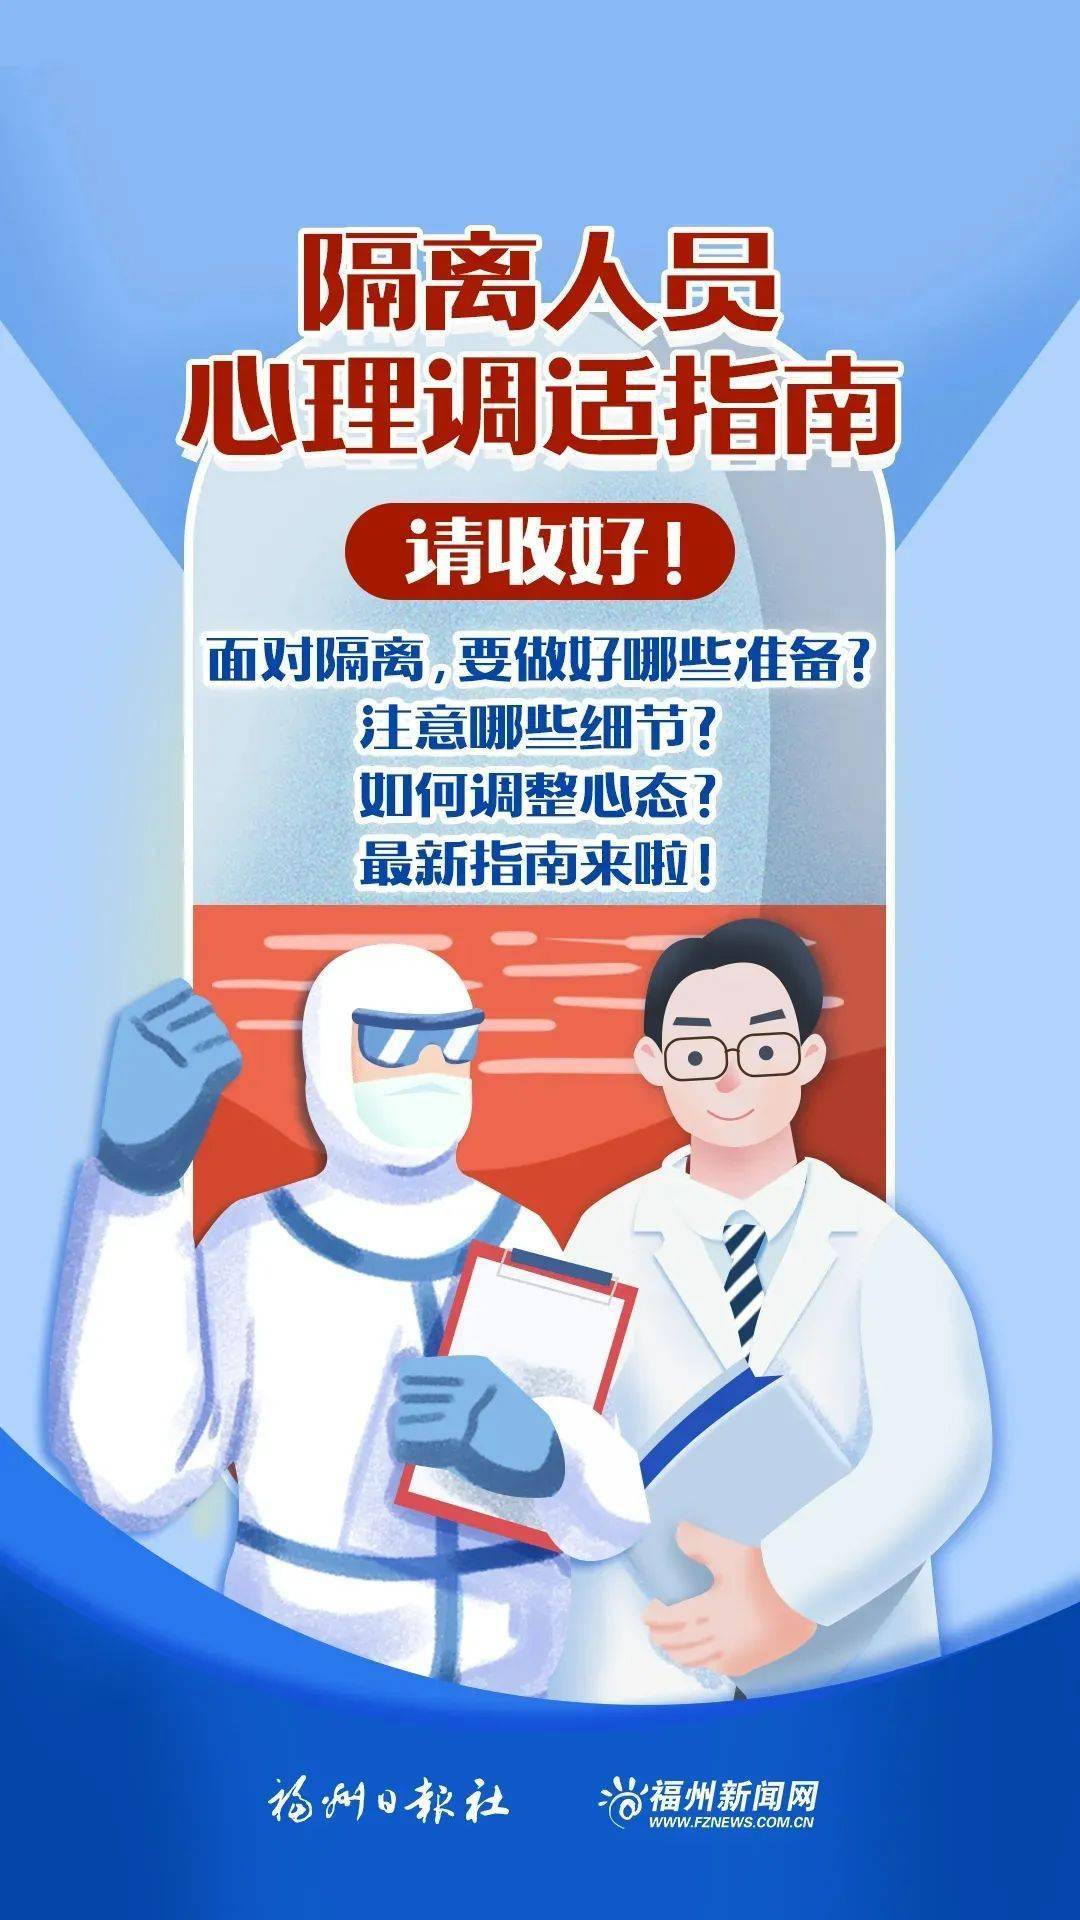 【防疫科普】2021年新冠肺炎疫情防控知识宣传